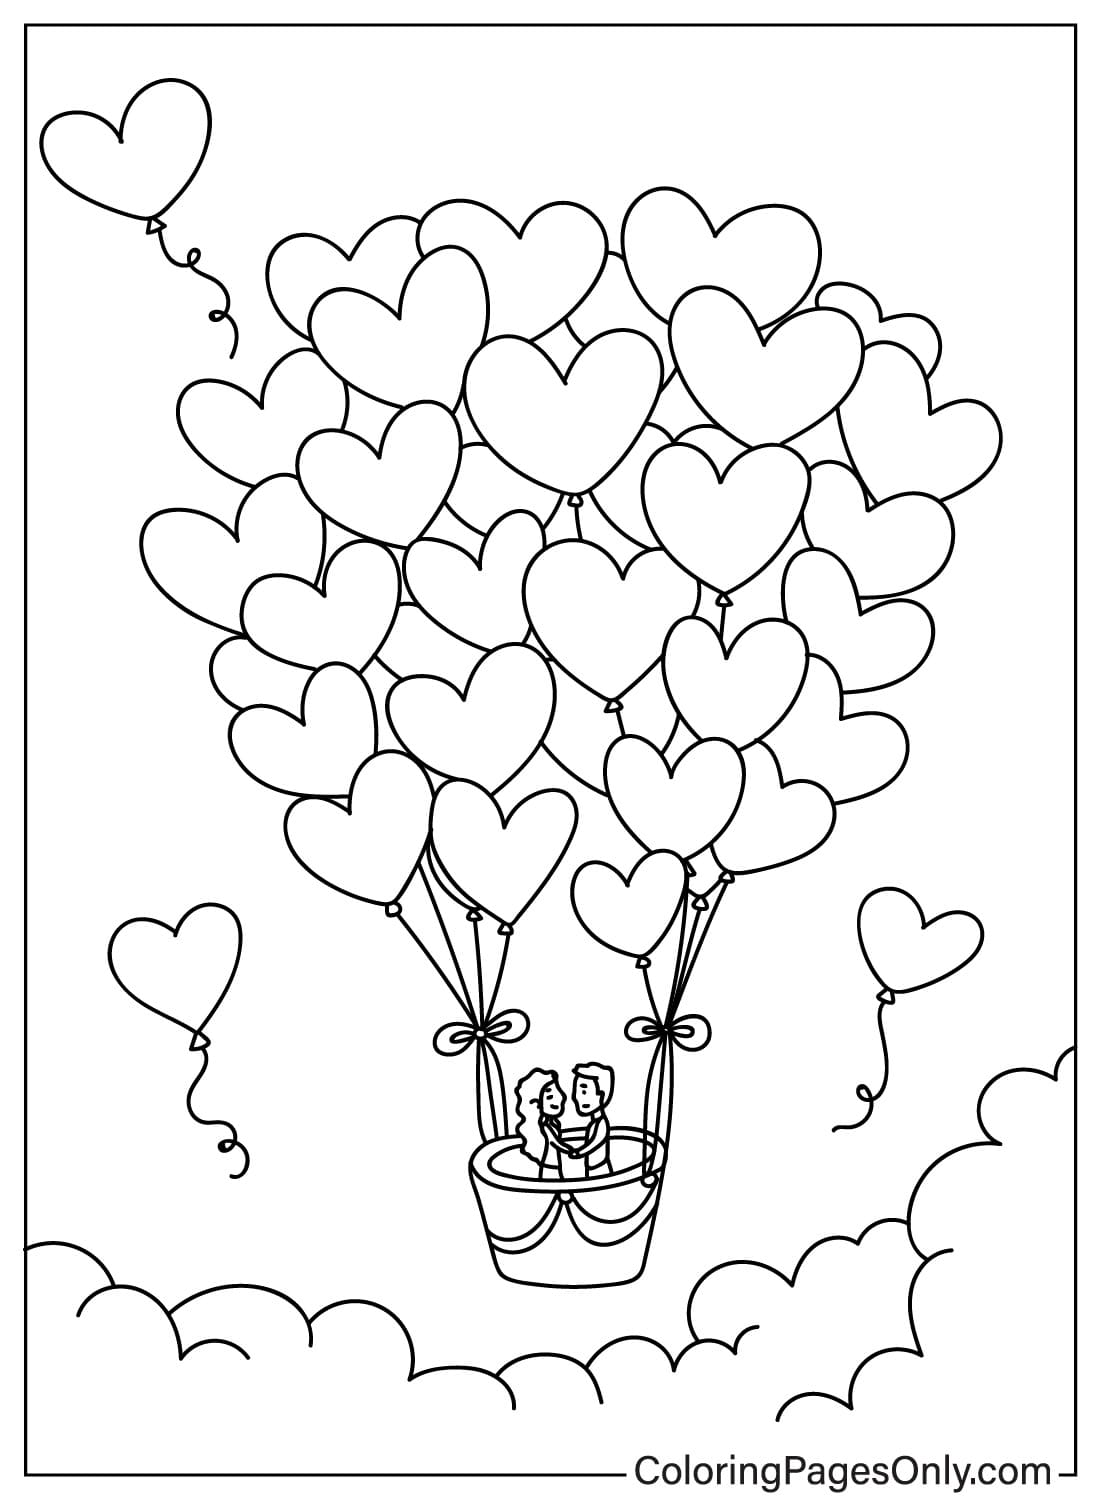 Página para colorear de globos de corazón de Heart